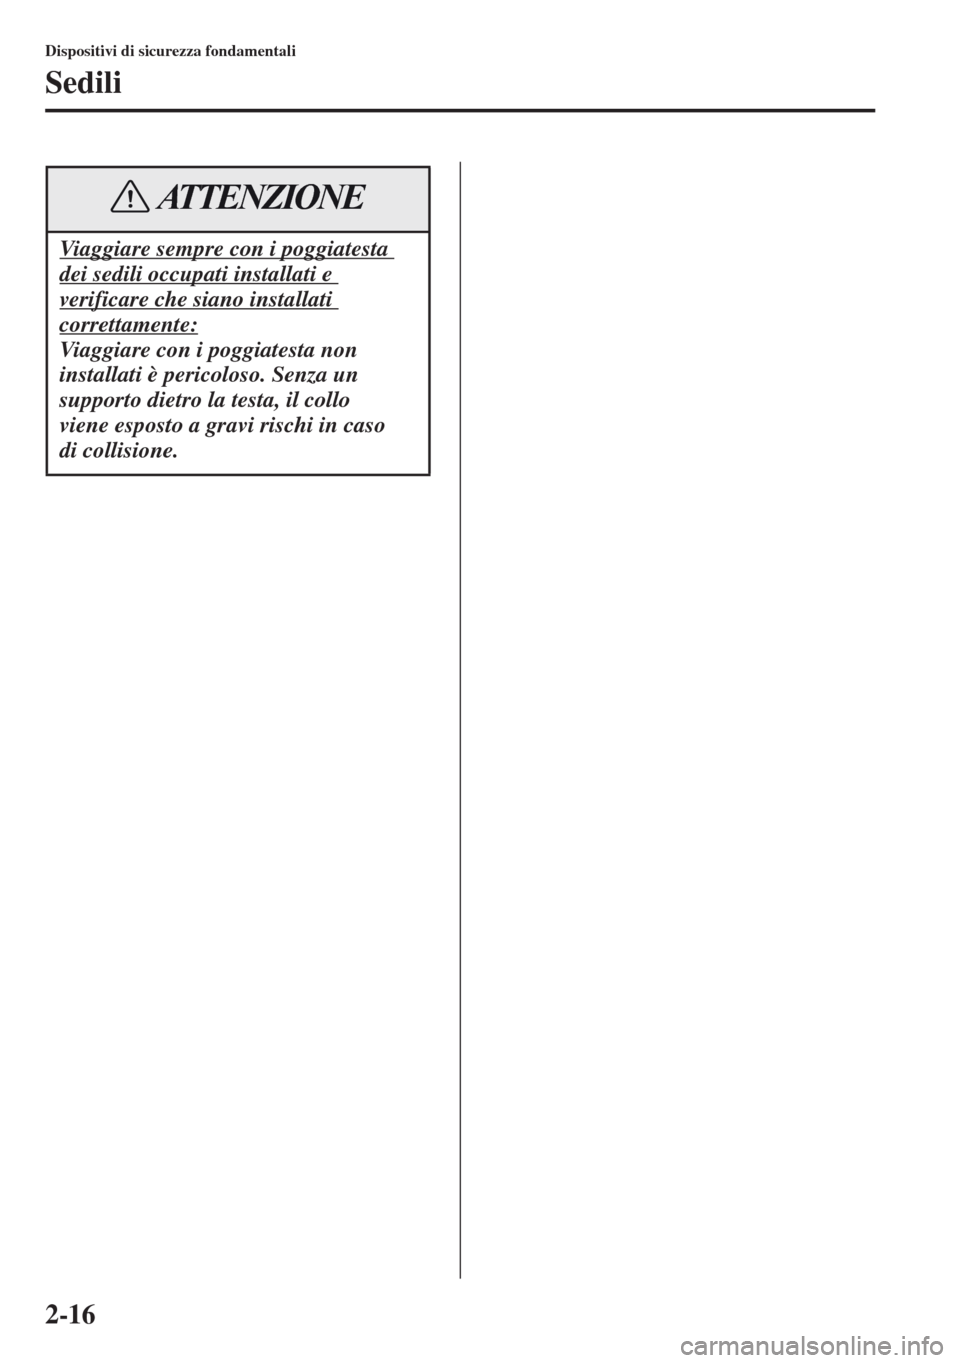 MAZDA MODEL CX-5 2013  Manuale del proprietario (in Italian) 2-16
Dispositivi di sicurezza fondamentali
Sedili
Viaggiare sempre con i poggiatesta 
dei sedili occupati installati e 
verificare che siano installati 
correttamente:
Viaggiare con i poggiatesta non 